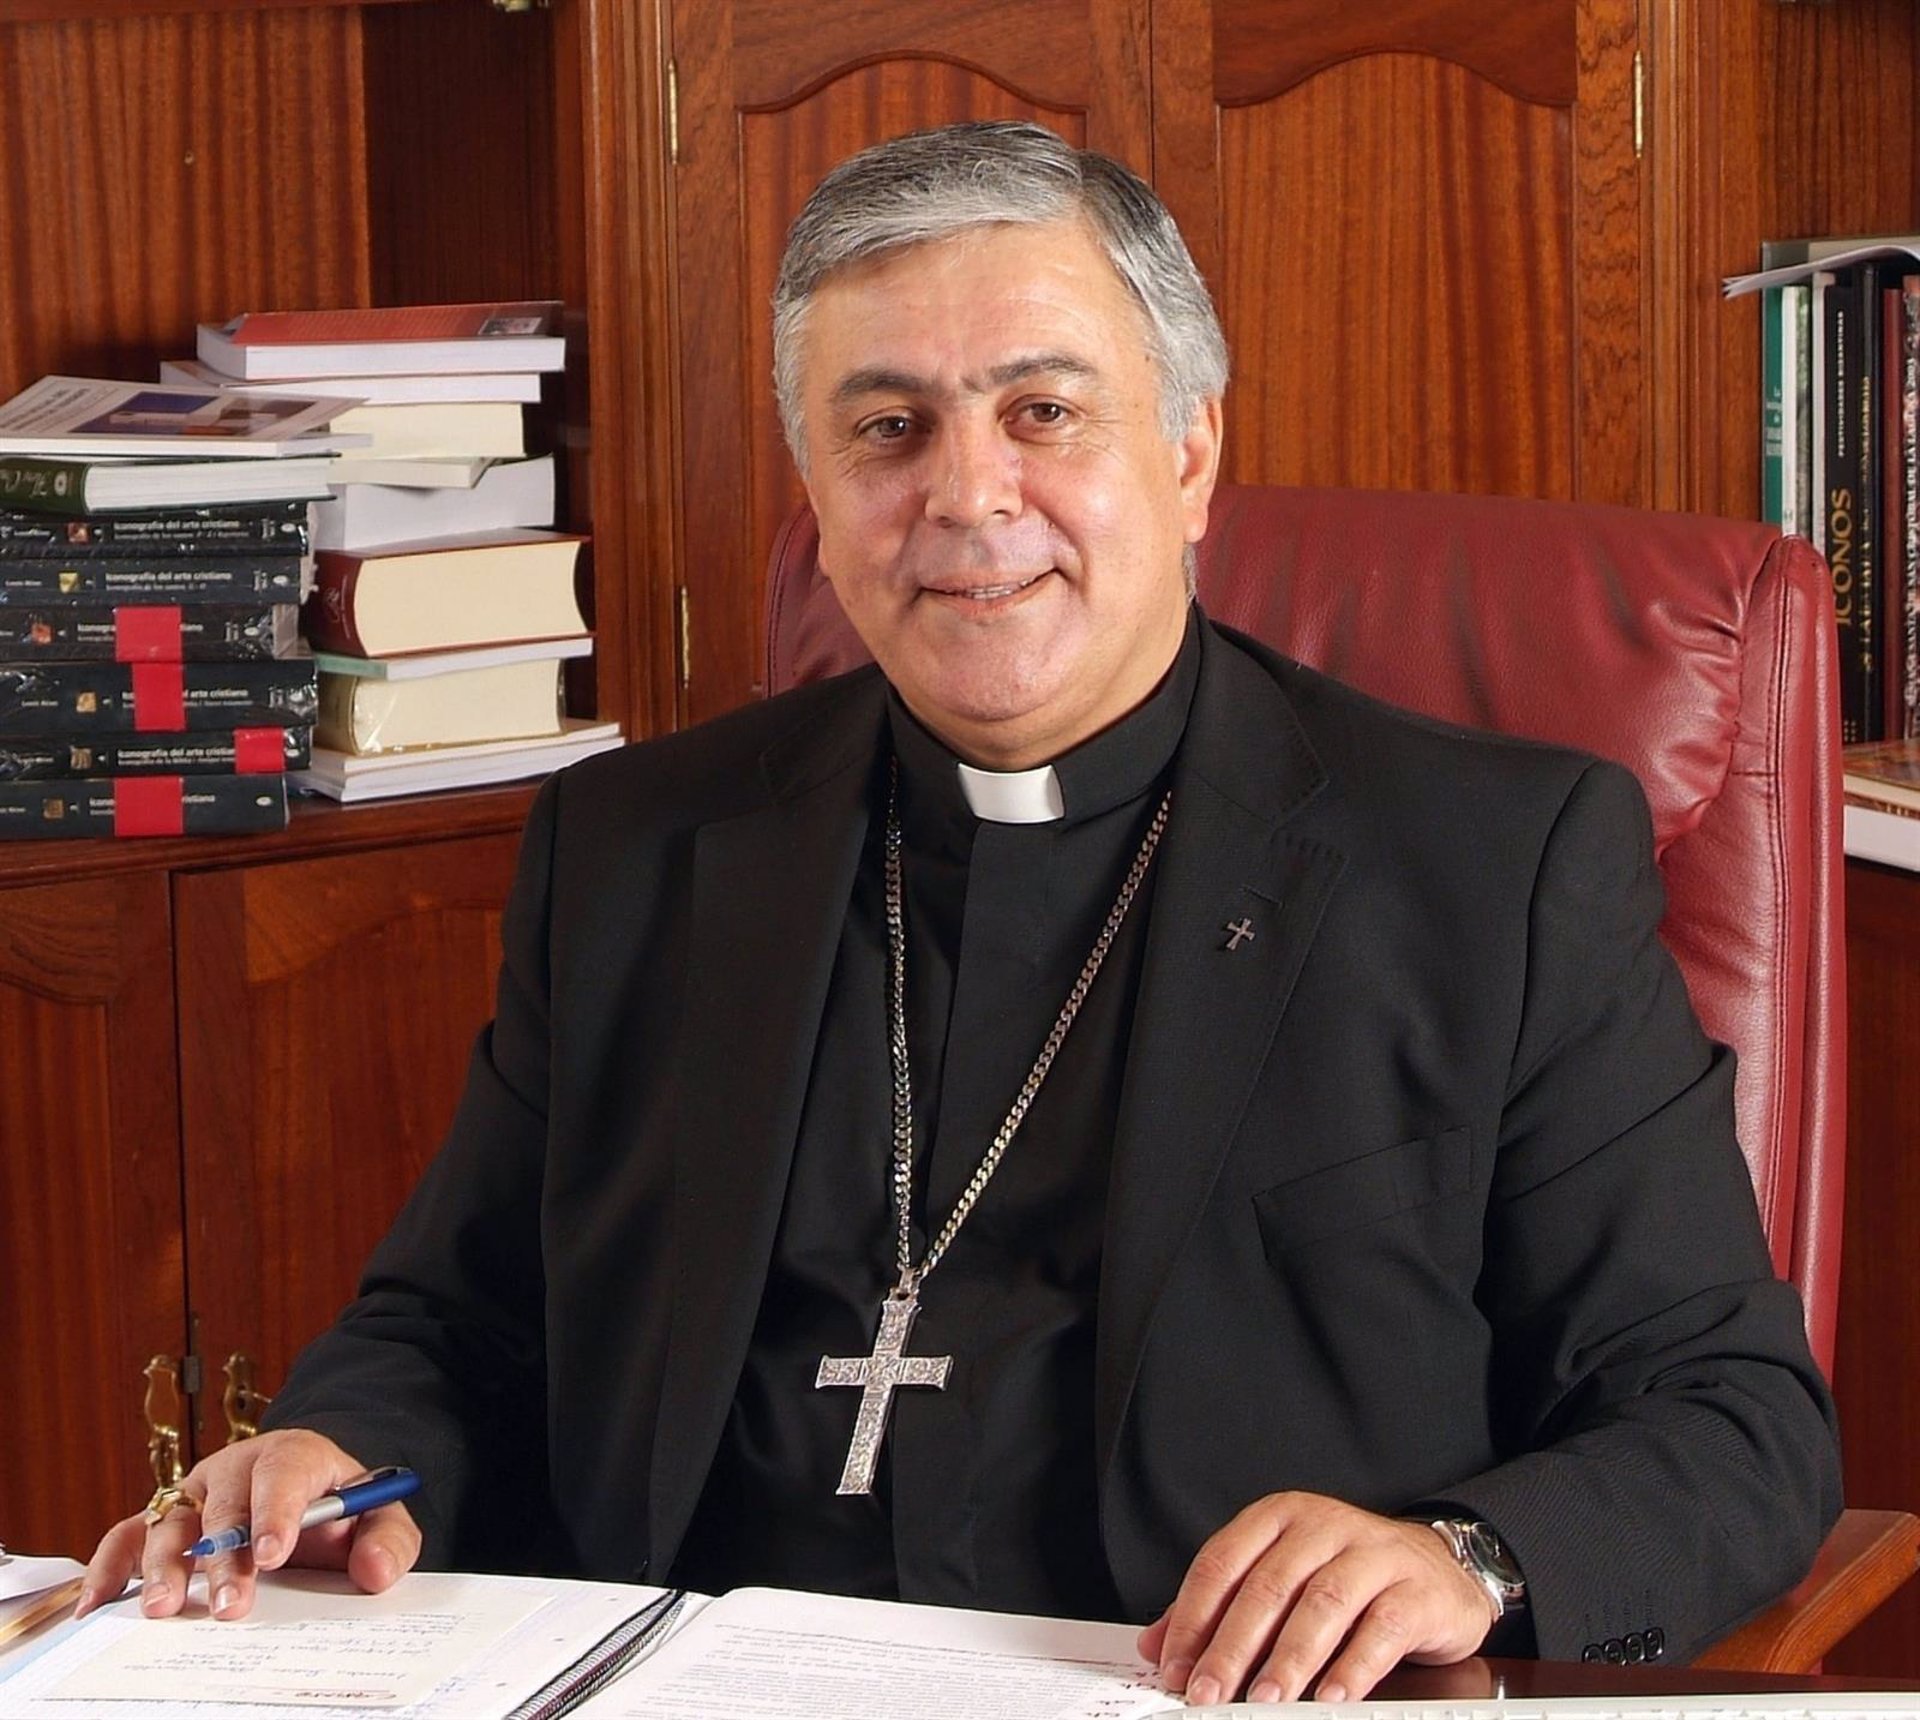 El obispo de Tenerife vuelve a hacer gala de su homofobia: "La homosexualidad es un pecado mortal"